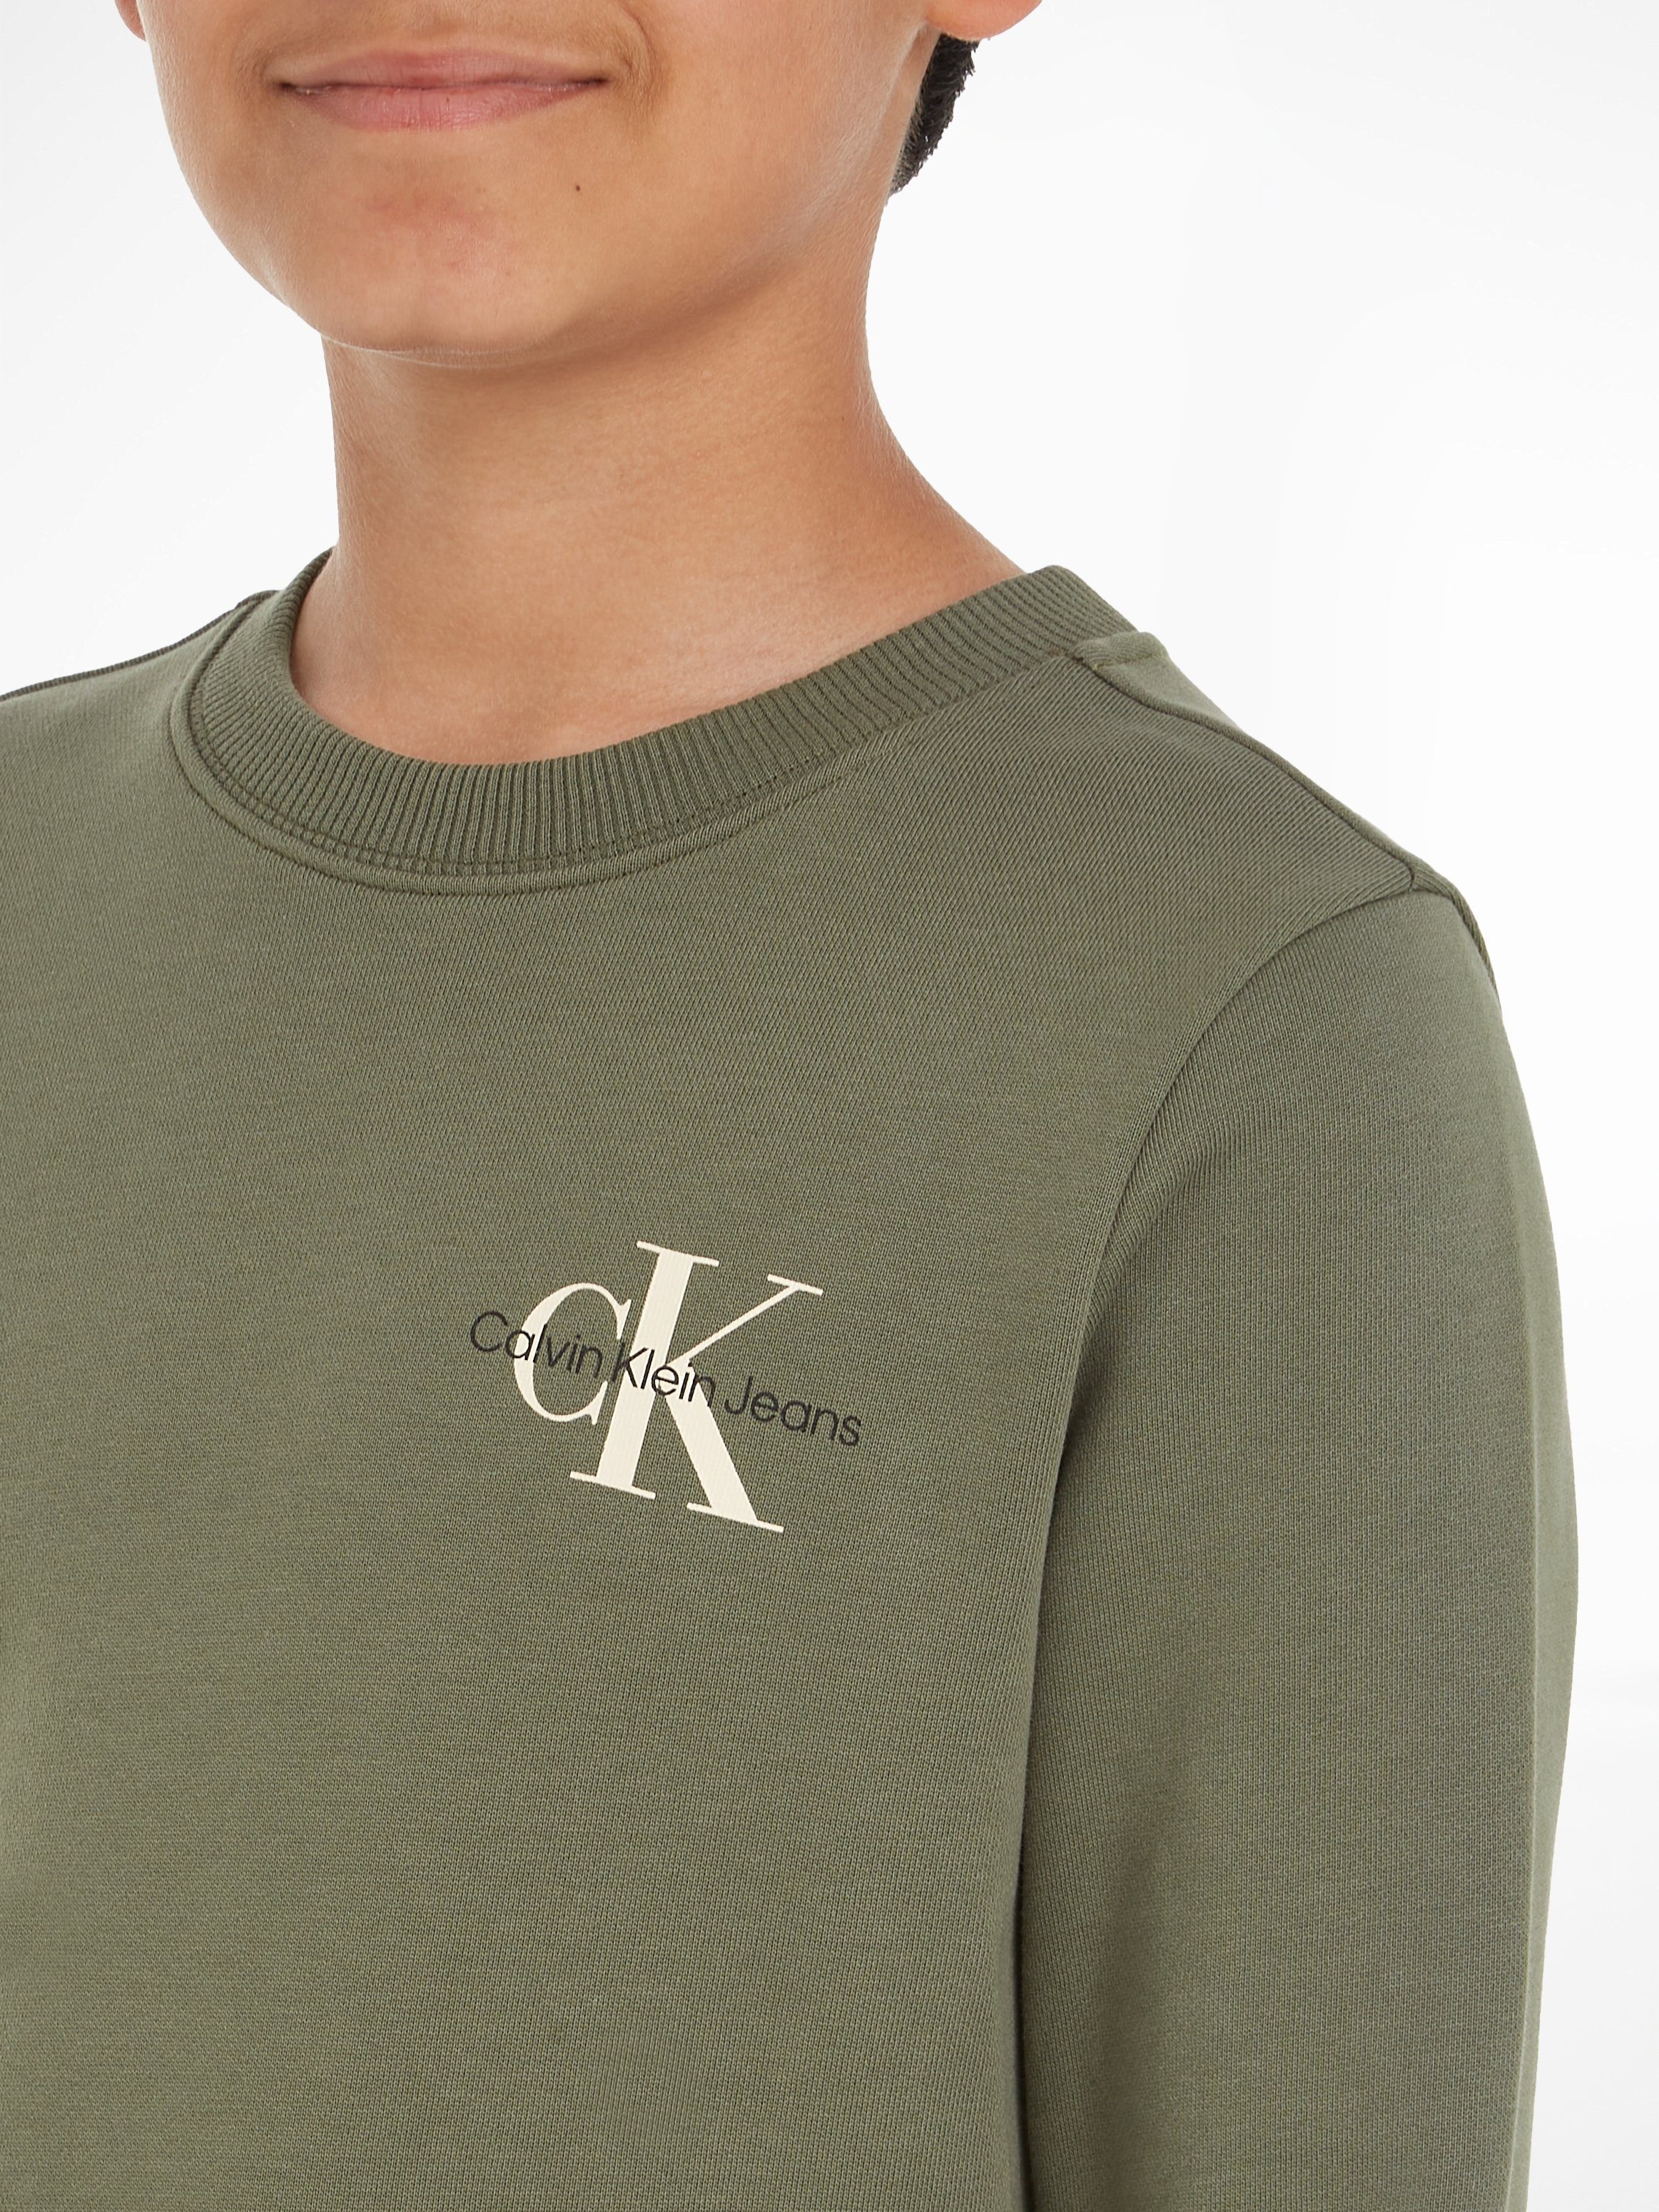 Calvin CN Jeans Logodruck Klein mit Olive SWEATSHIRT MONOGRAM Sweatshirt Dusty